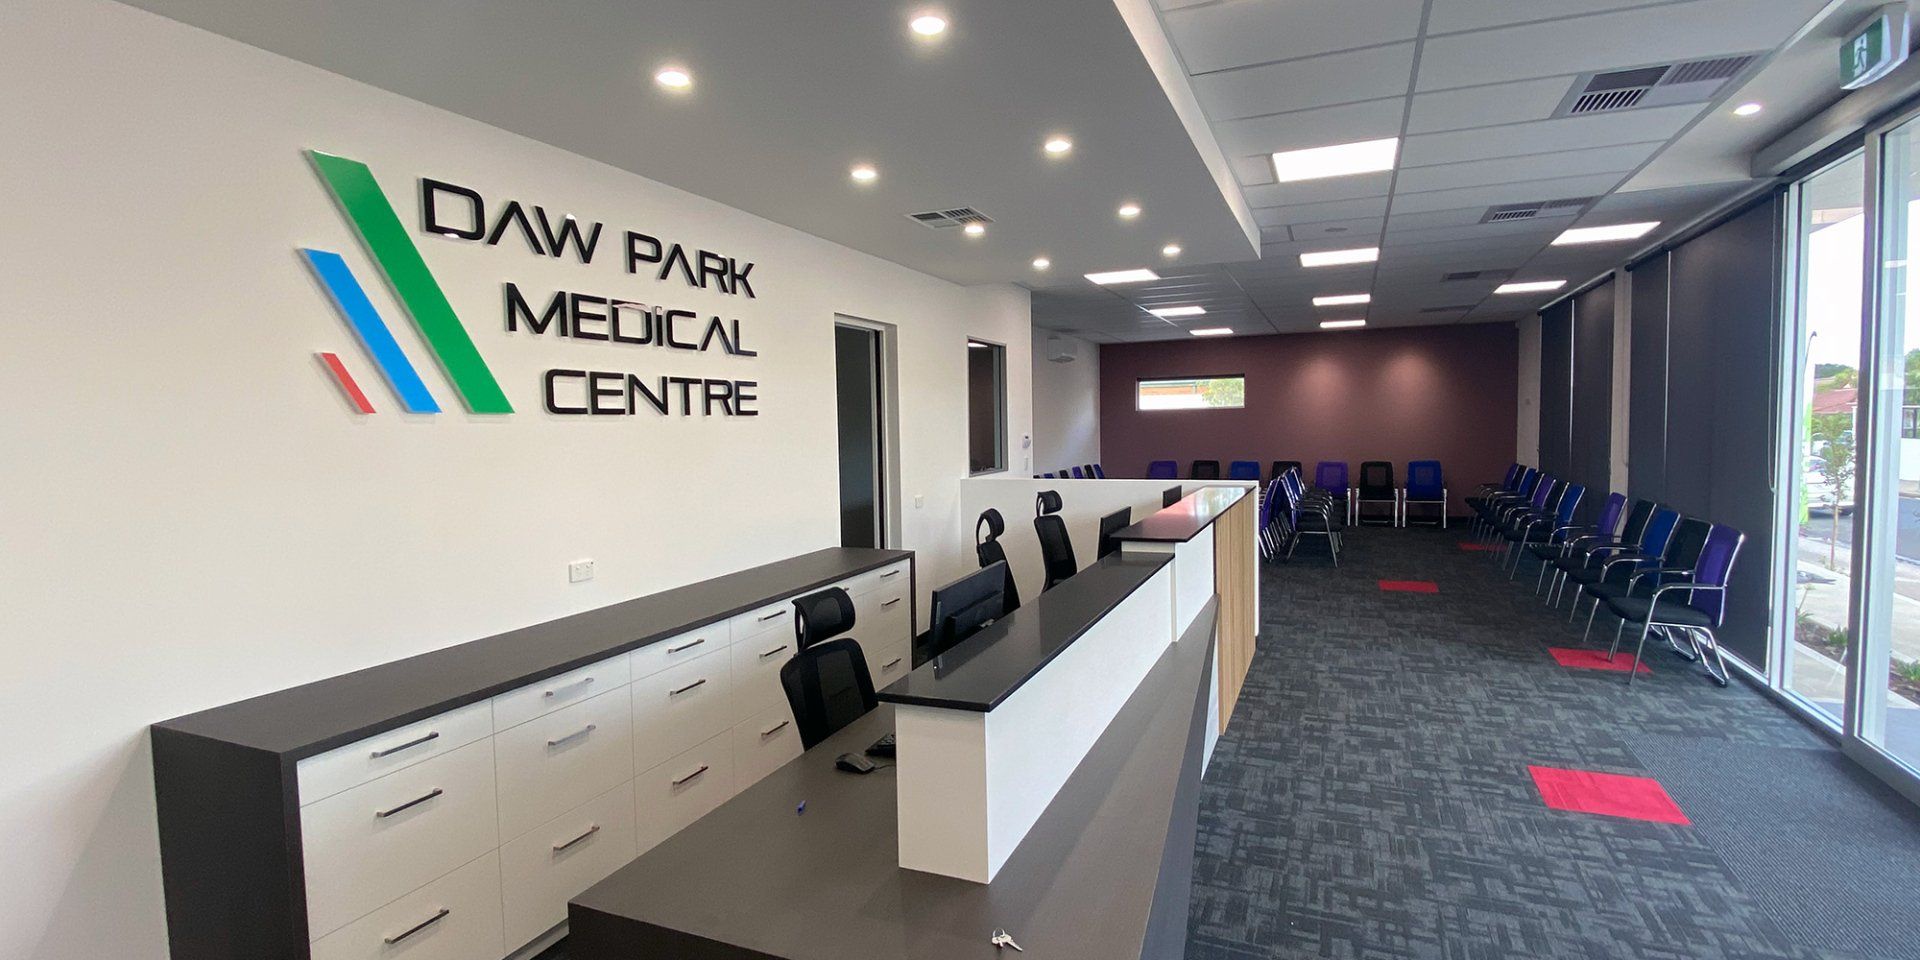 Daw Park Medical Centre